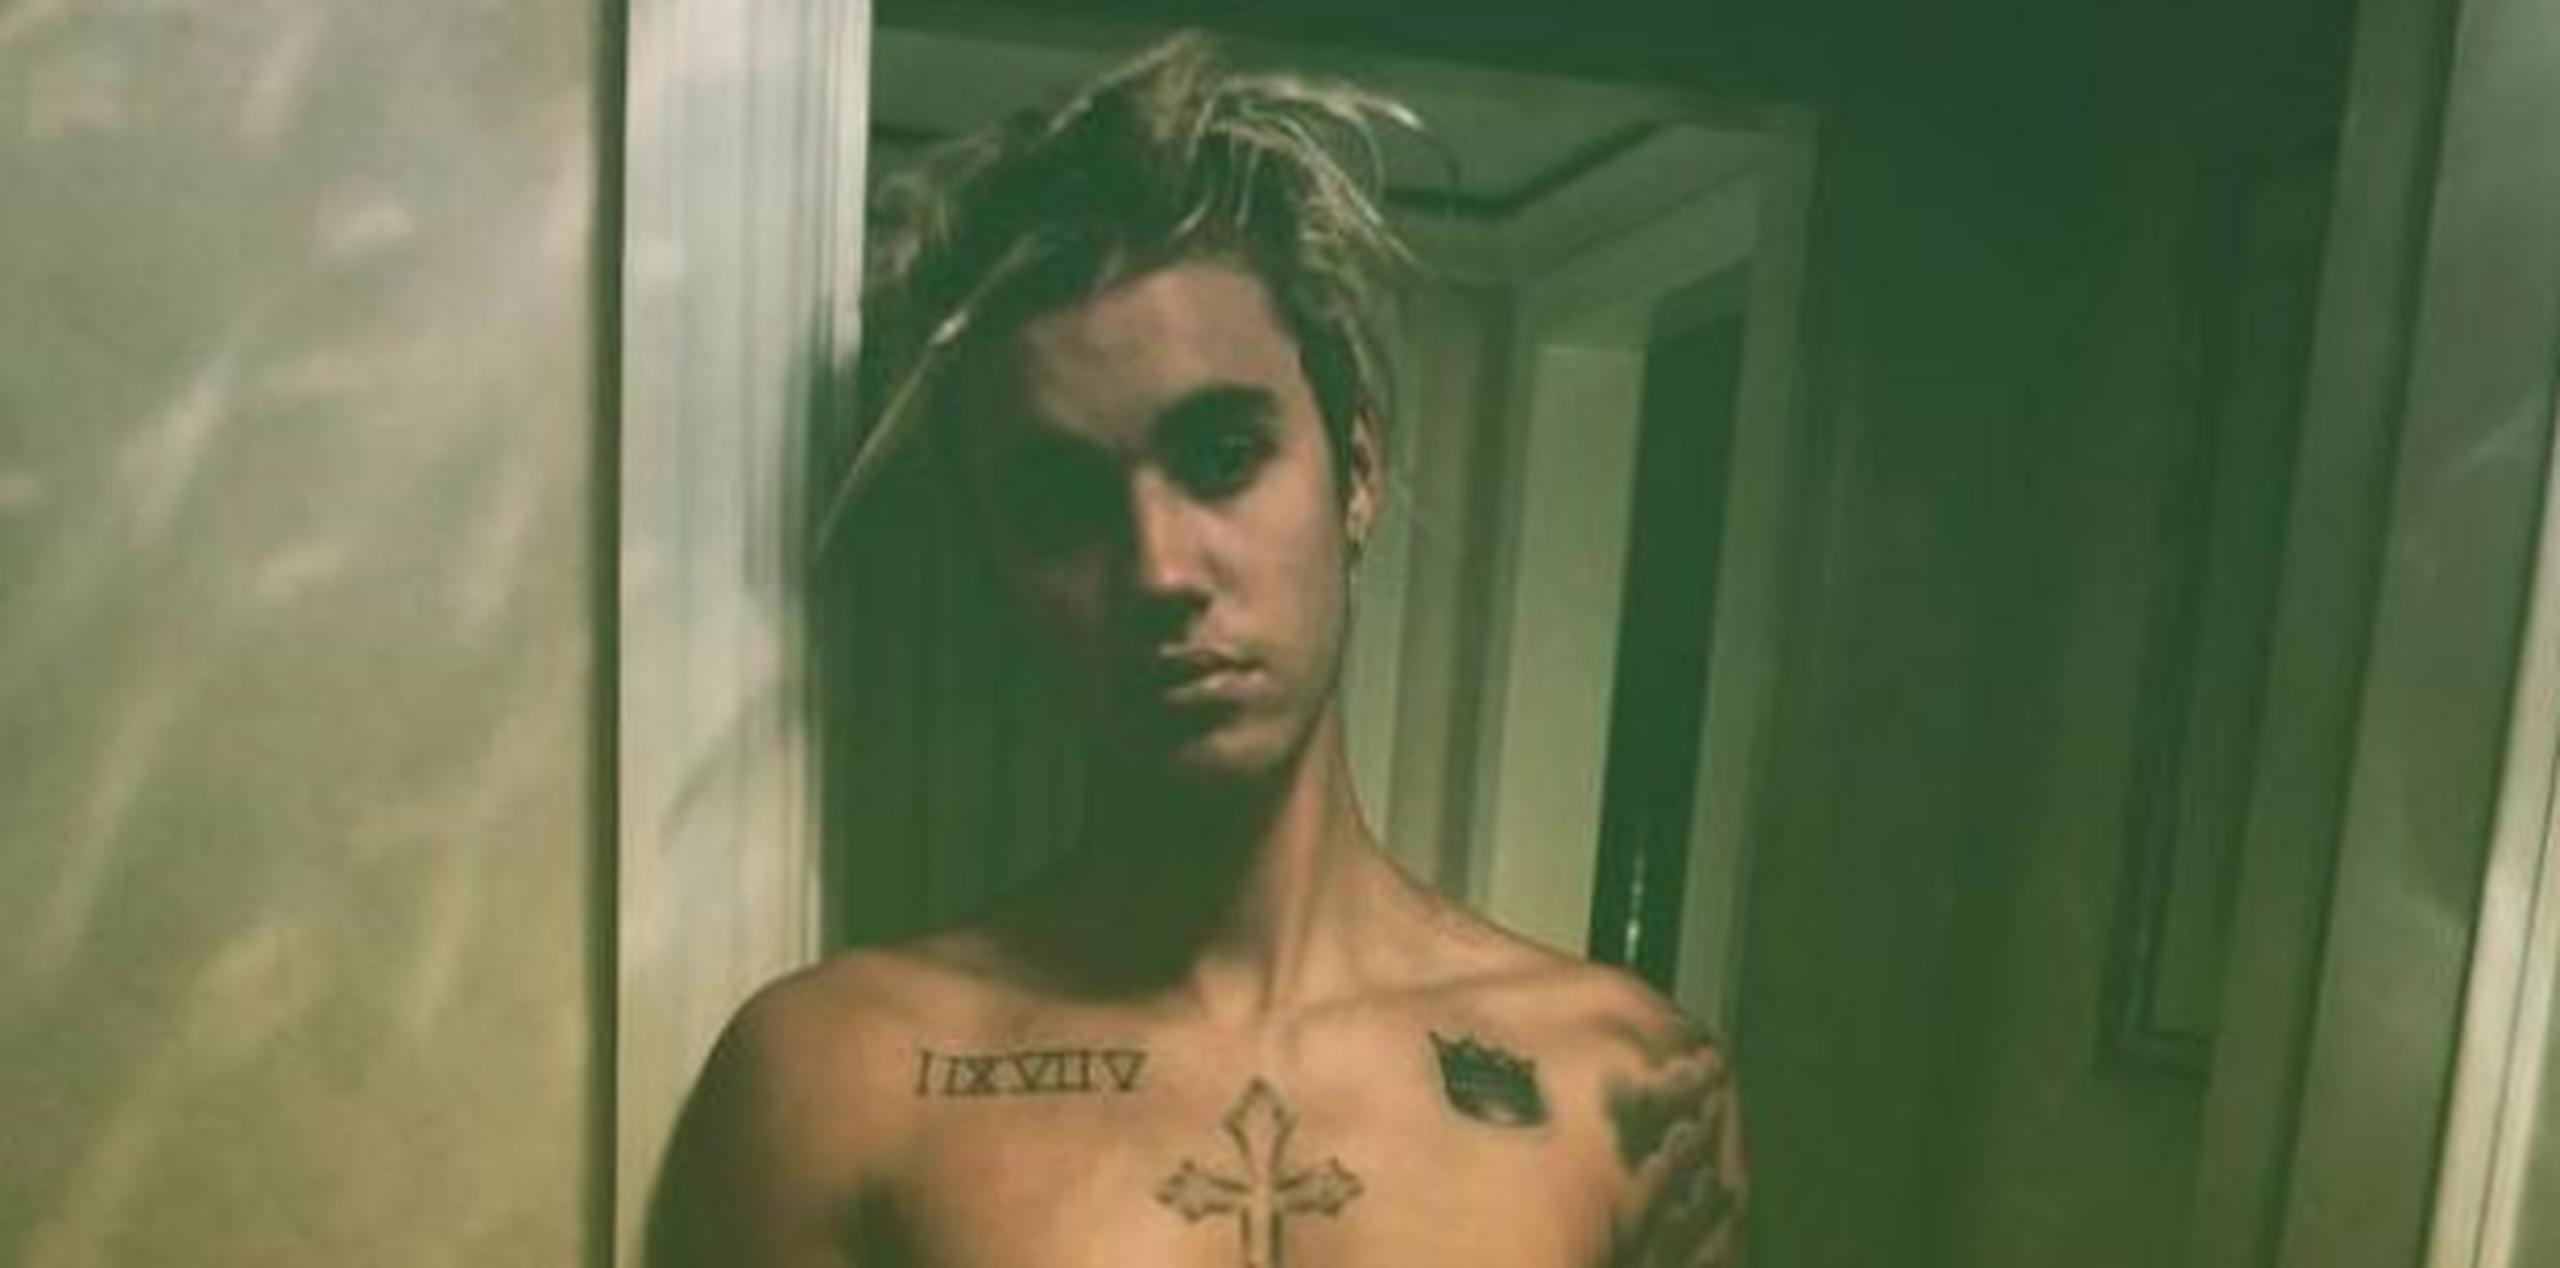 Justin Bieber parece haberse cansado de cuidar su cabellera y decidió ir por un radical cambio de look, pocos días después de cumplir 22 años. (Archivo)